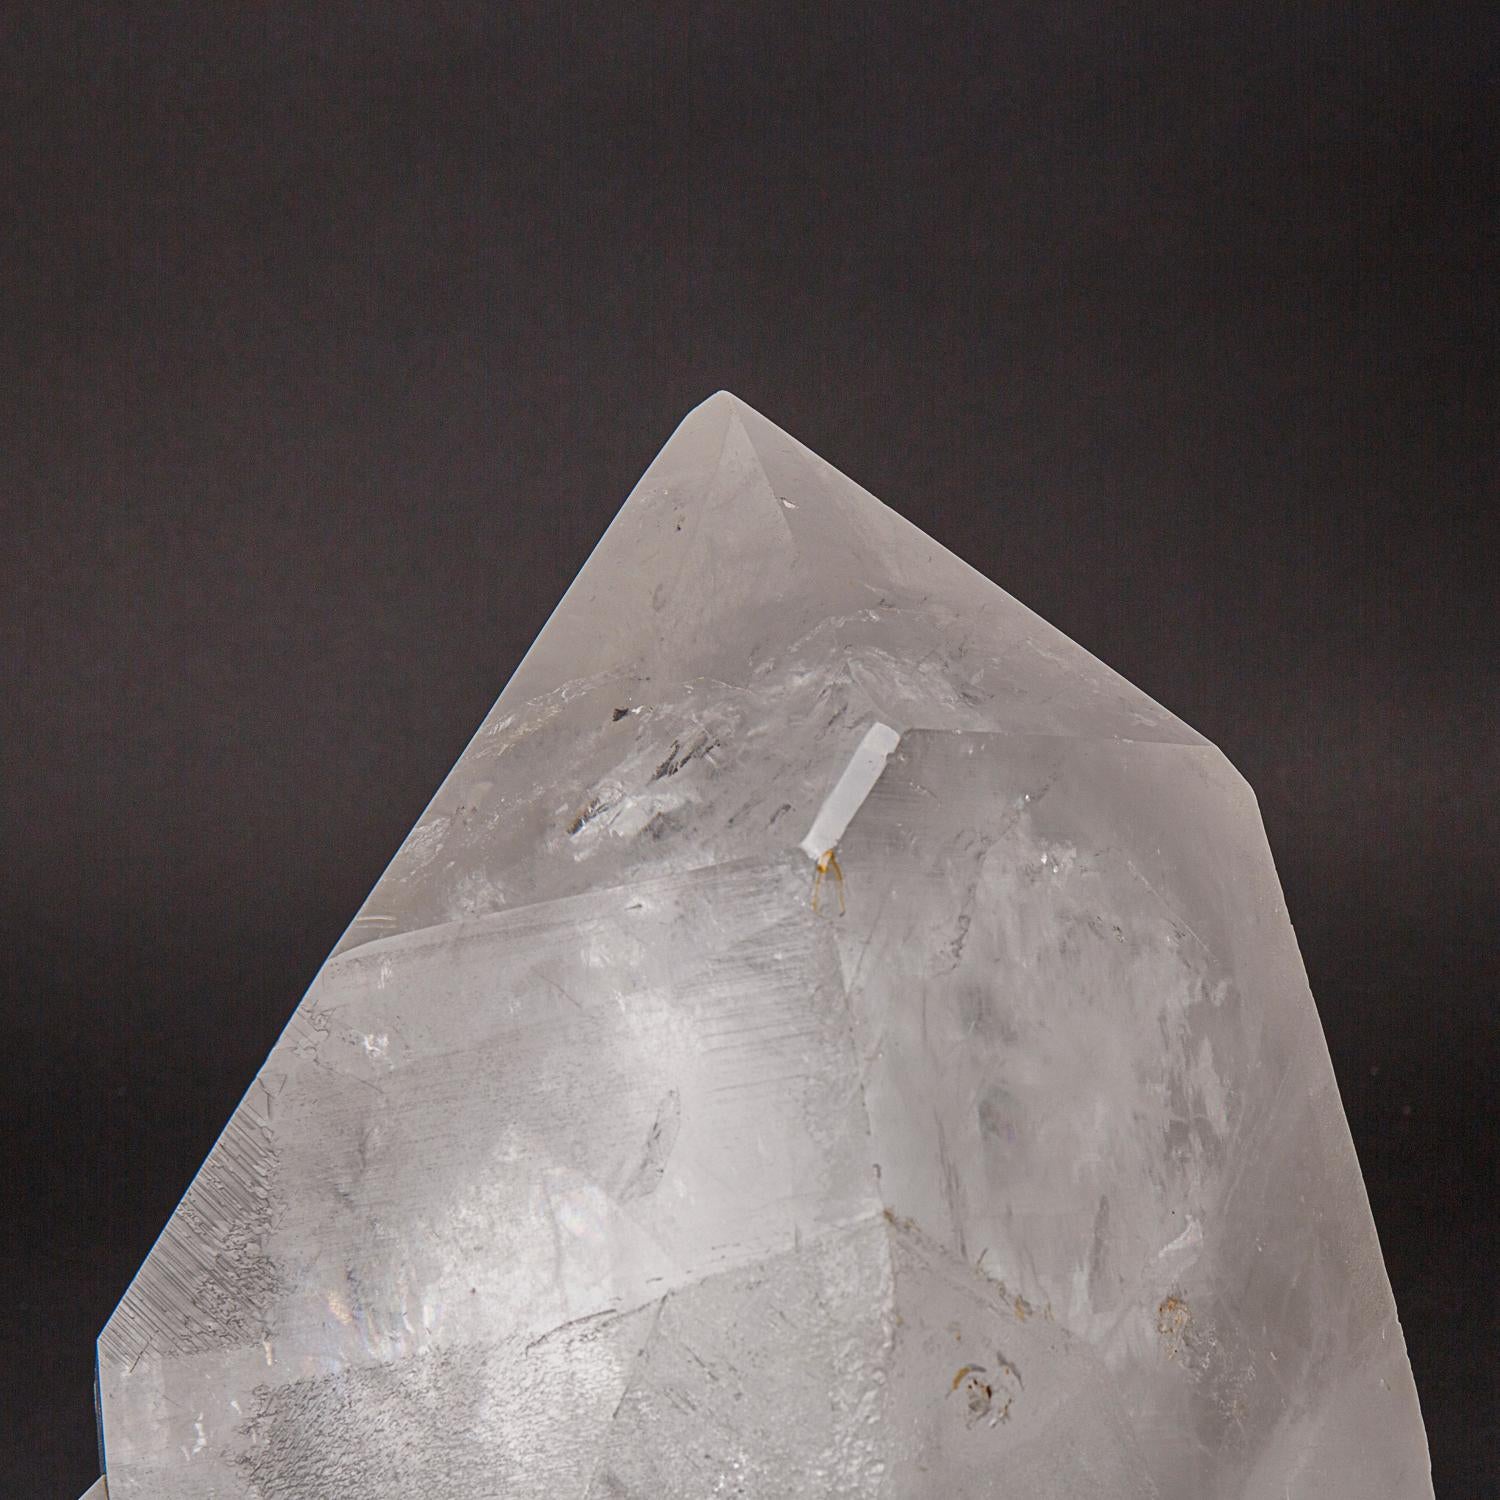 Cette véritable pointe de cristal de quartz clair du Brésil pèse 61,5 livres et est fabriquée à partir de cristaux de quartz transparents de première qualité. Avec une terminaison complète et une surface brillante et réfléchissante, ce cristal